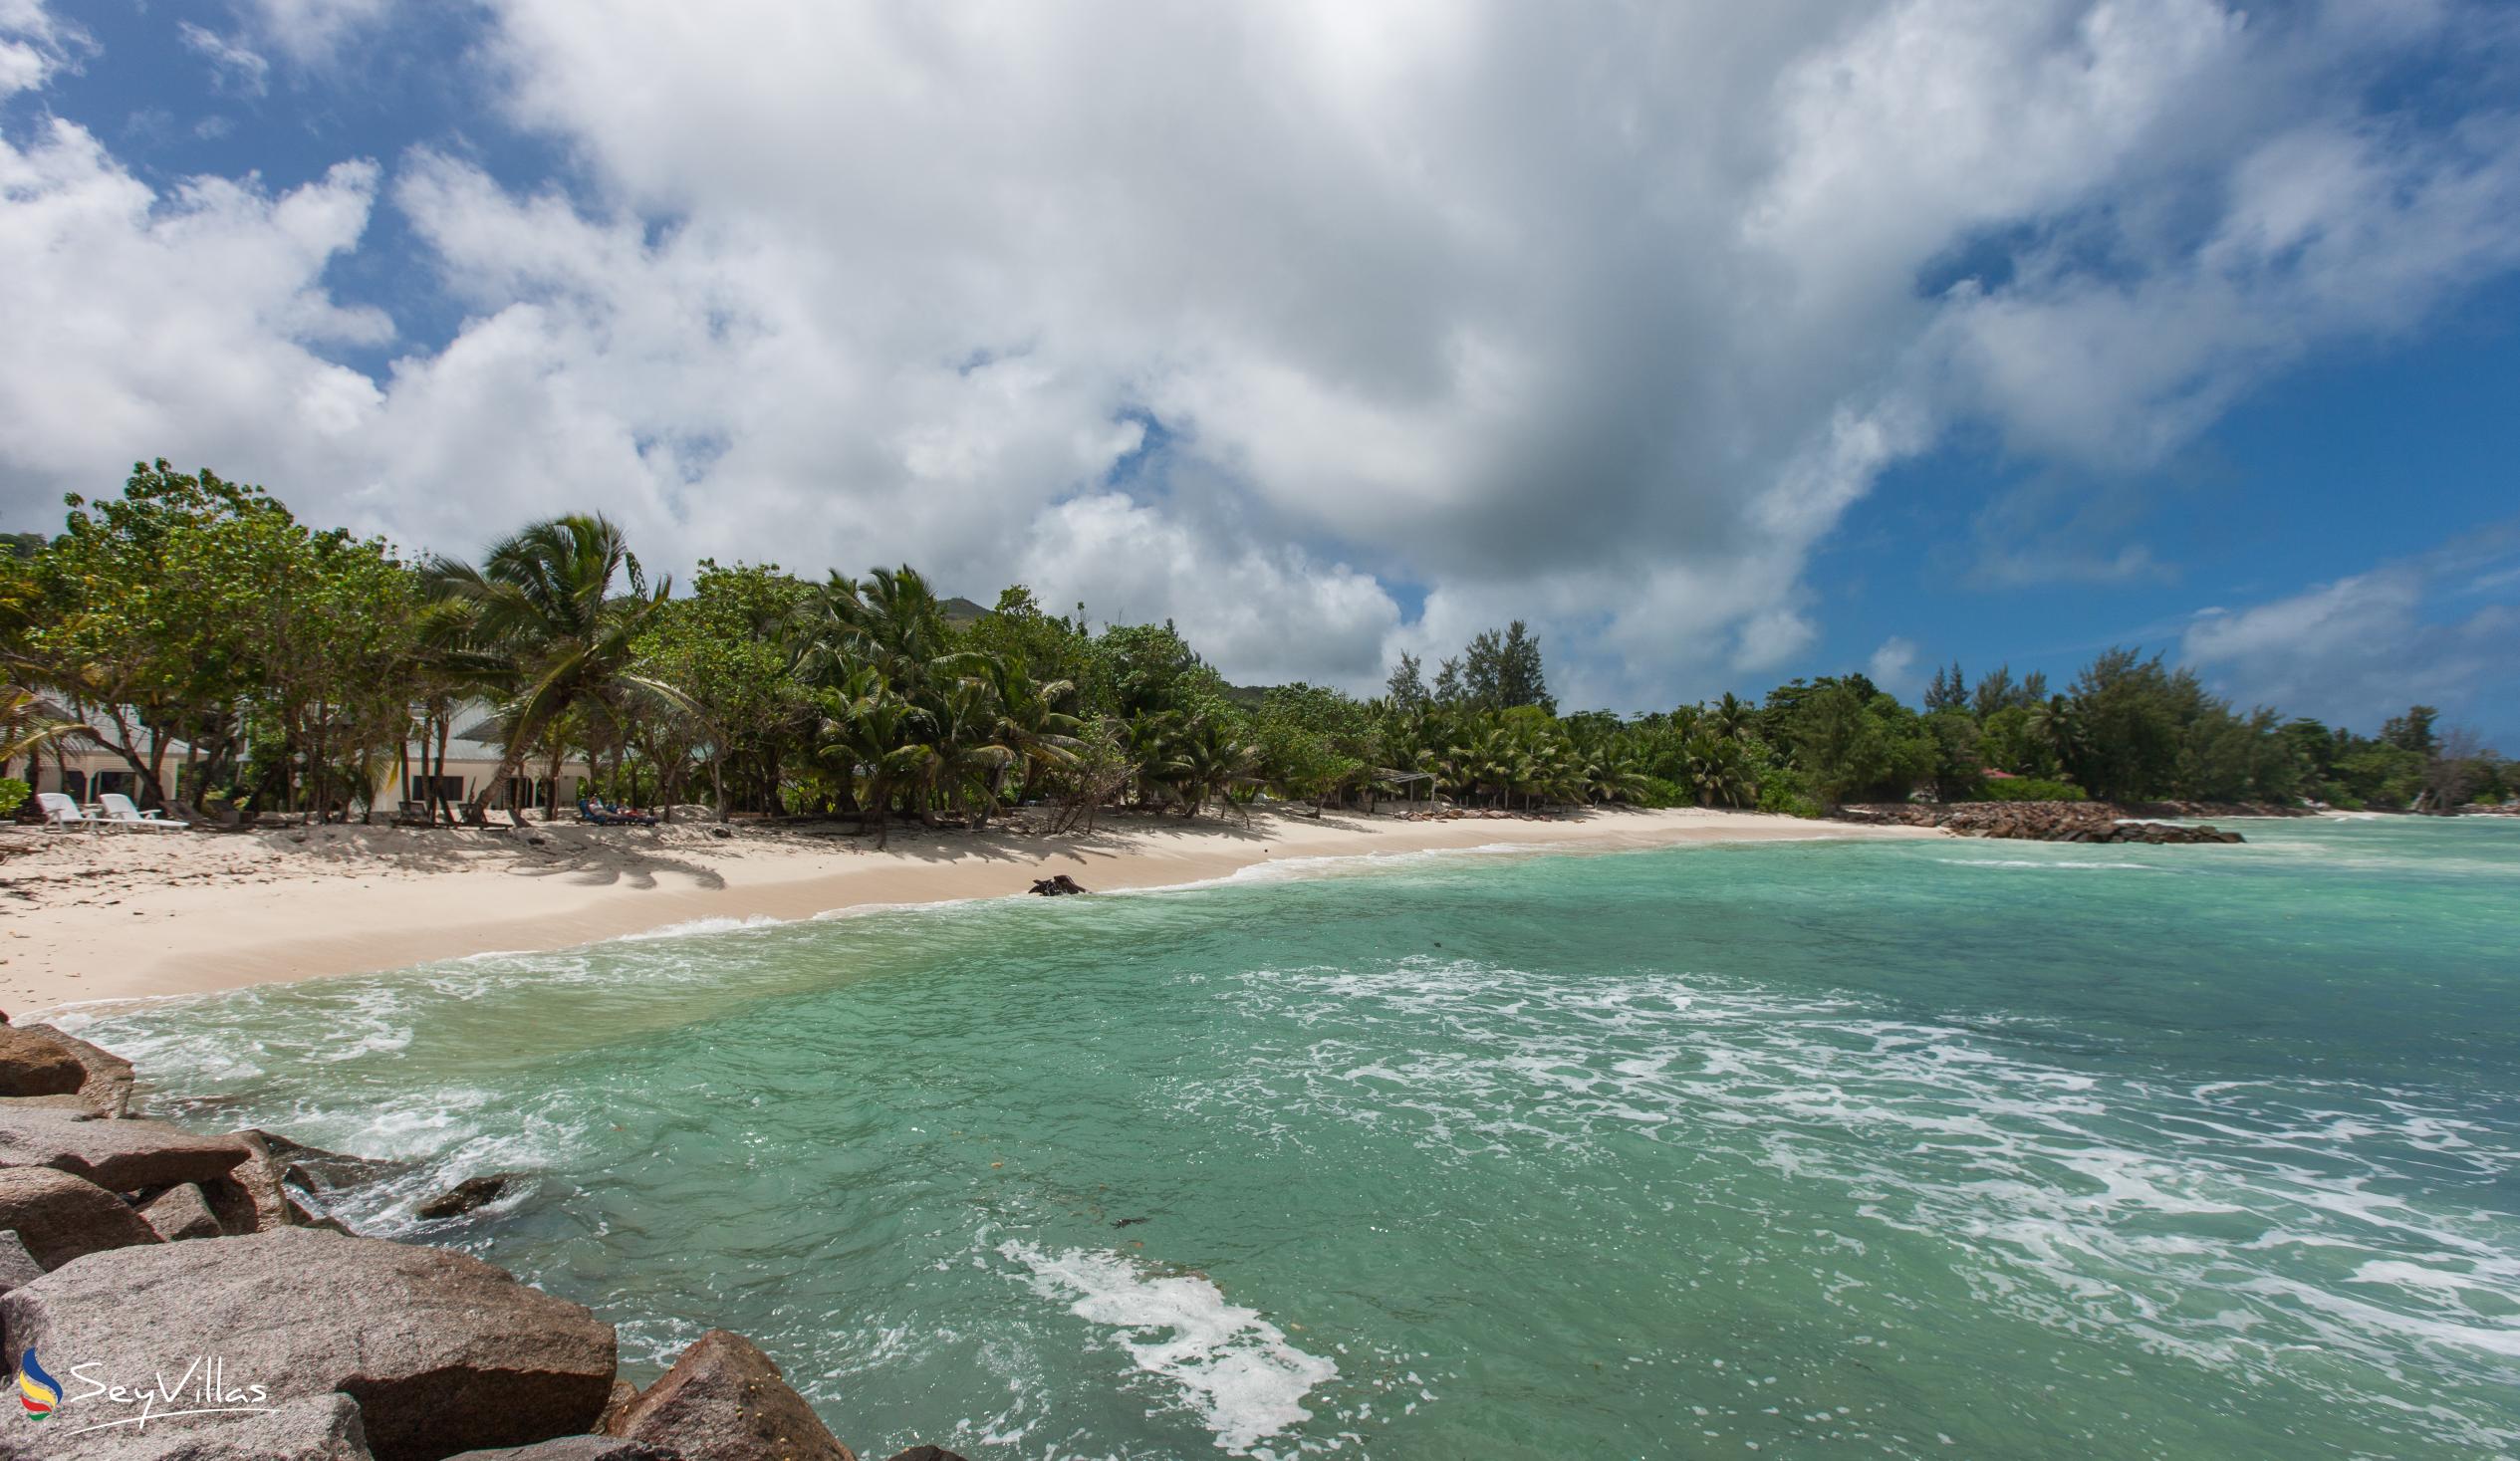 Foto 40: Villa Admiral - Posizione - Praslin (Seychelles)